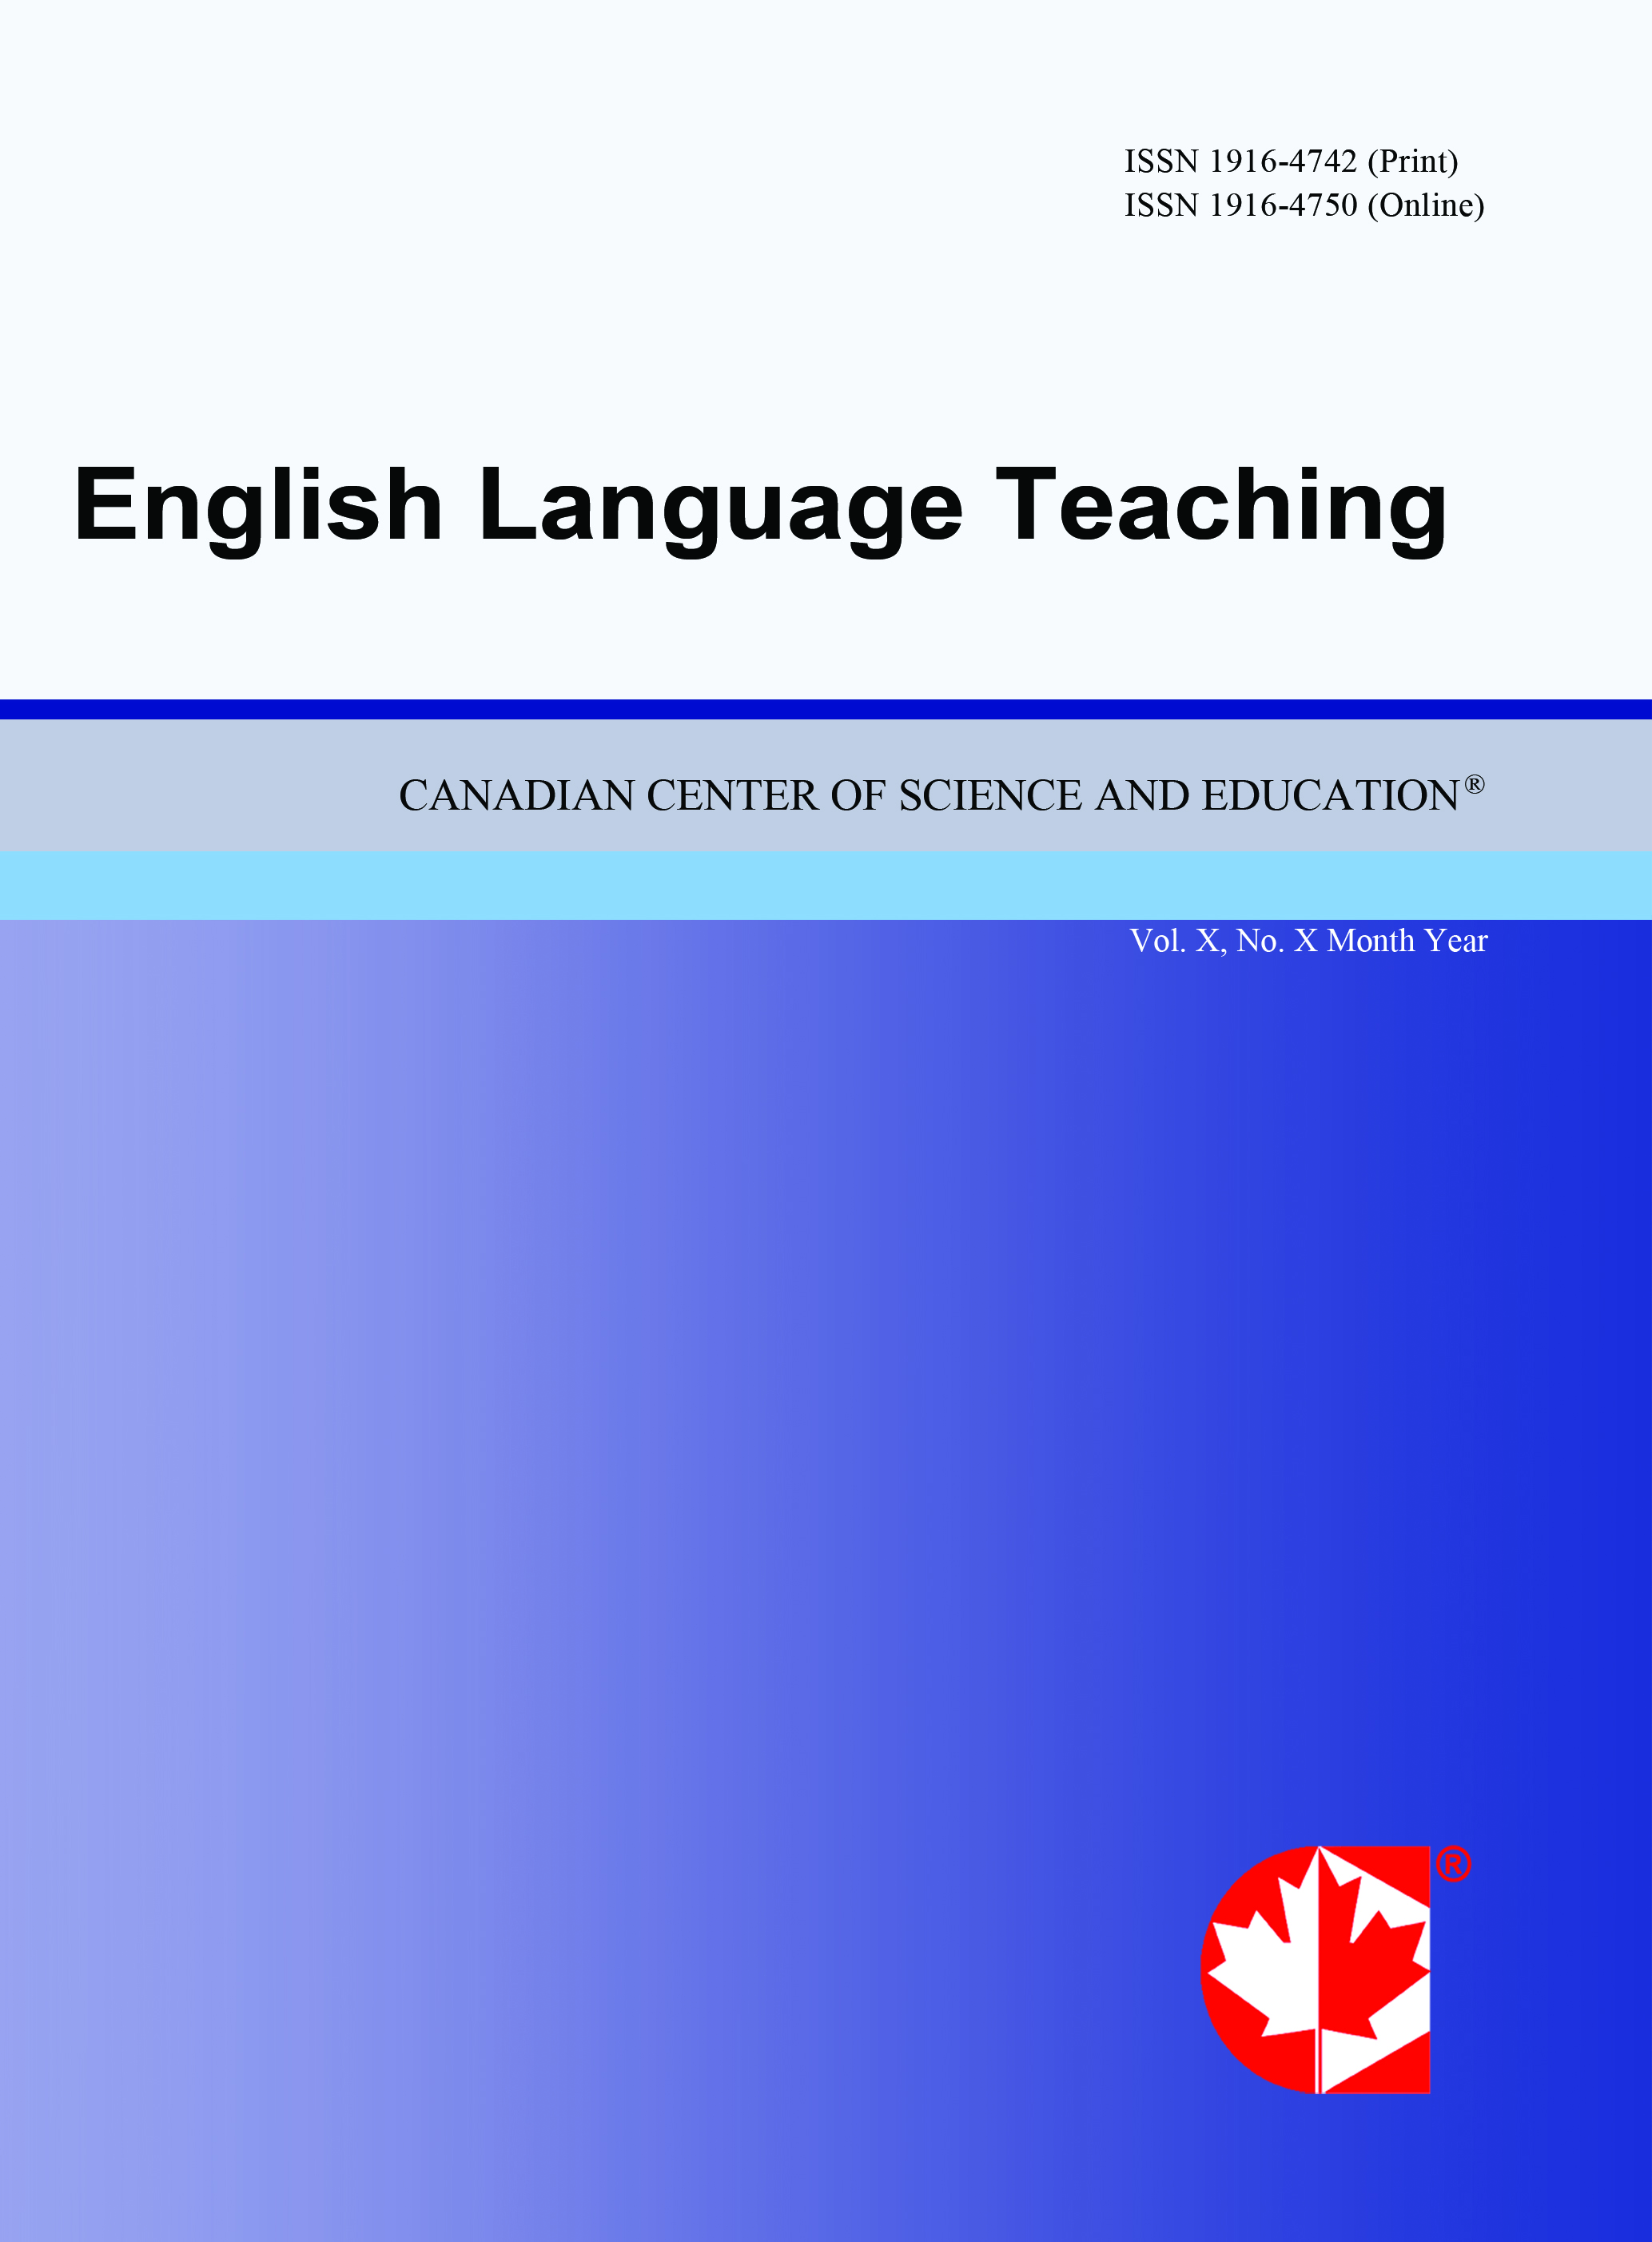 English language teaching